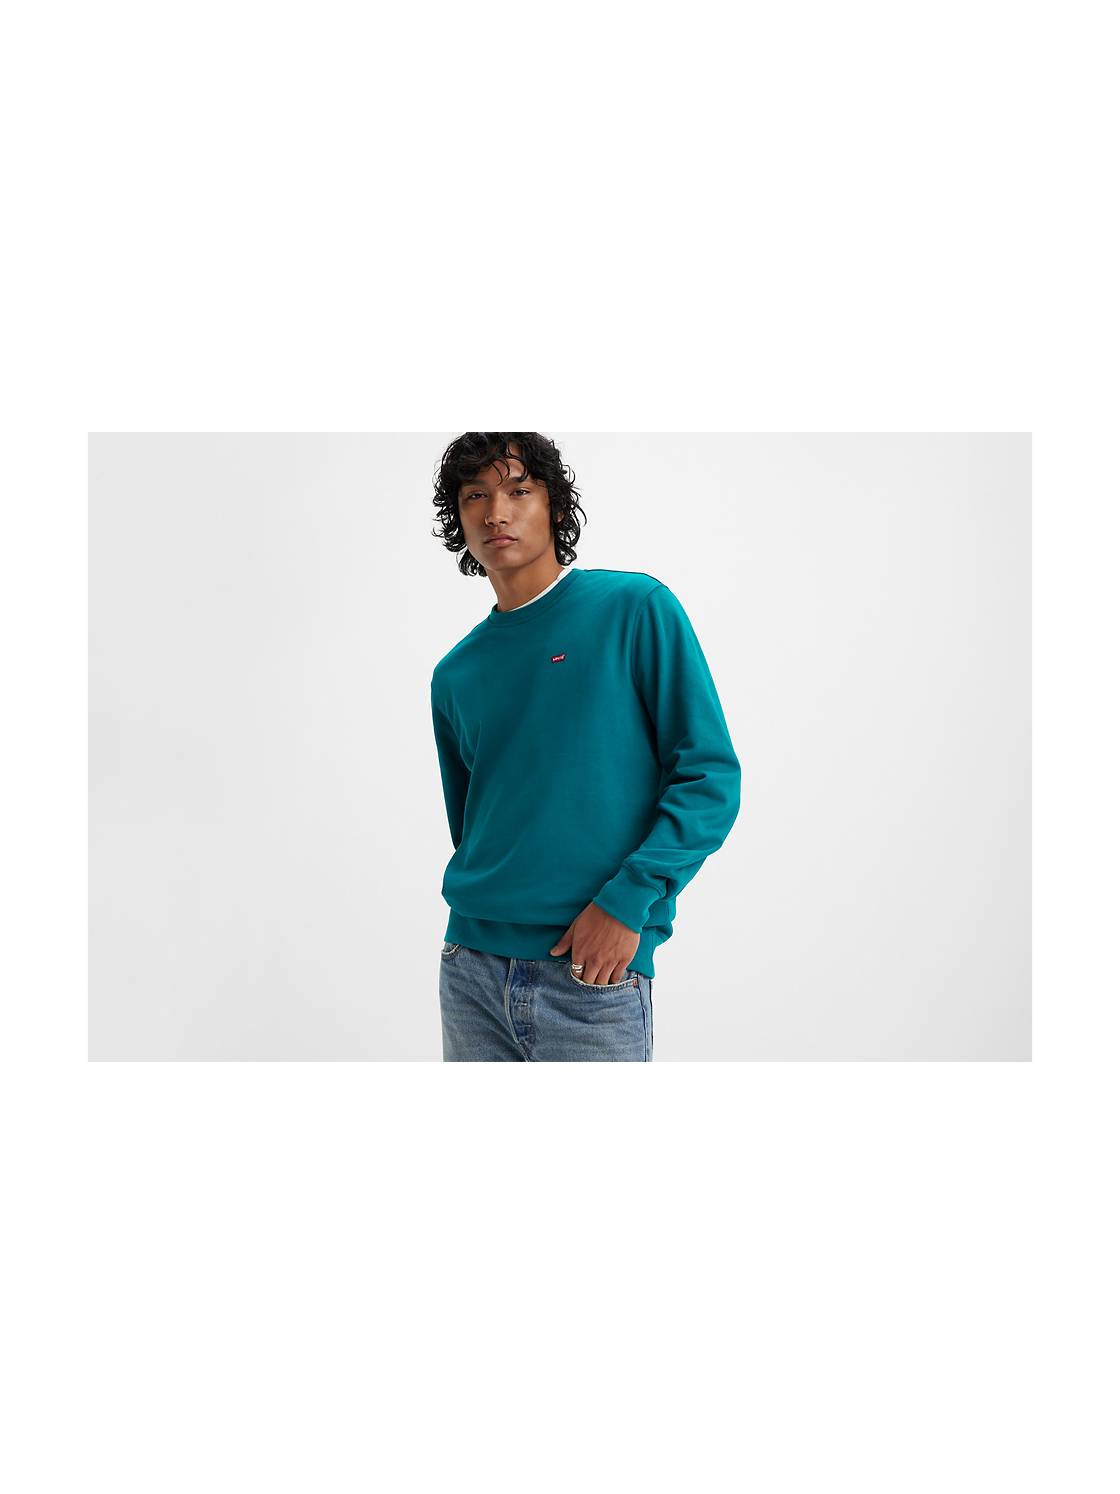 Men's & Big Men's Graphic Hoodie Sweatshirt - Charcoal - S - 3XL Each